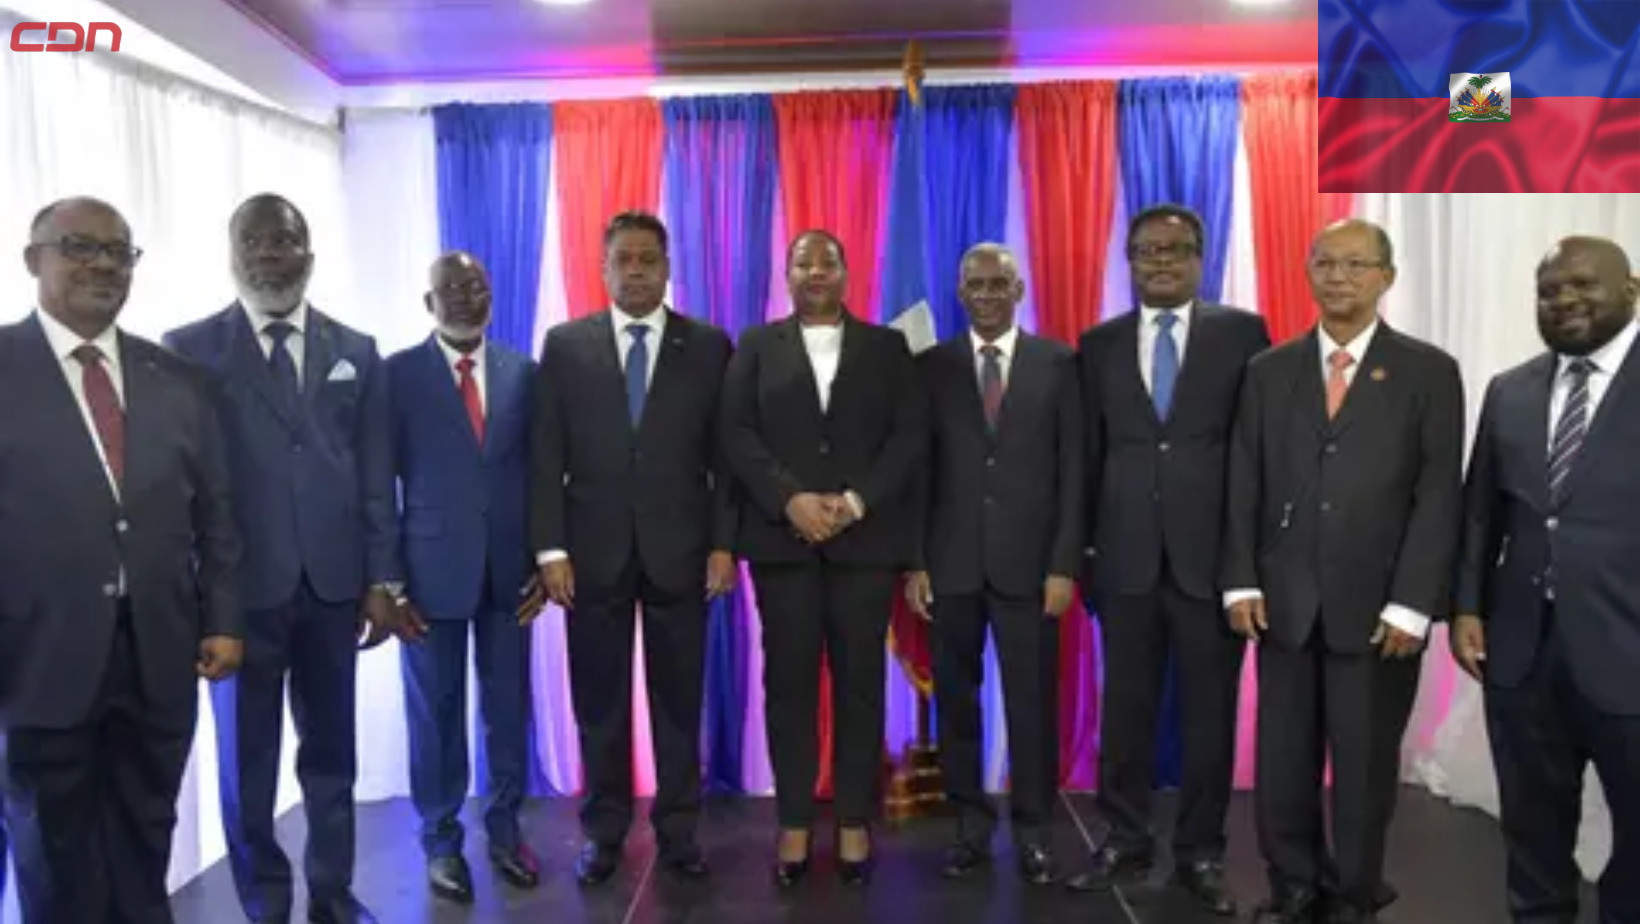 Los miembros del Consejo Presidencial de Transición de Haití. Foto: Fuente externa